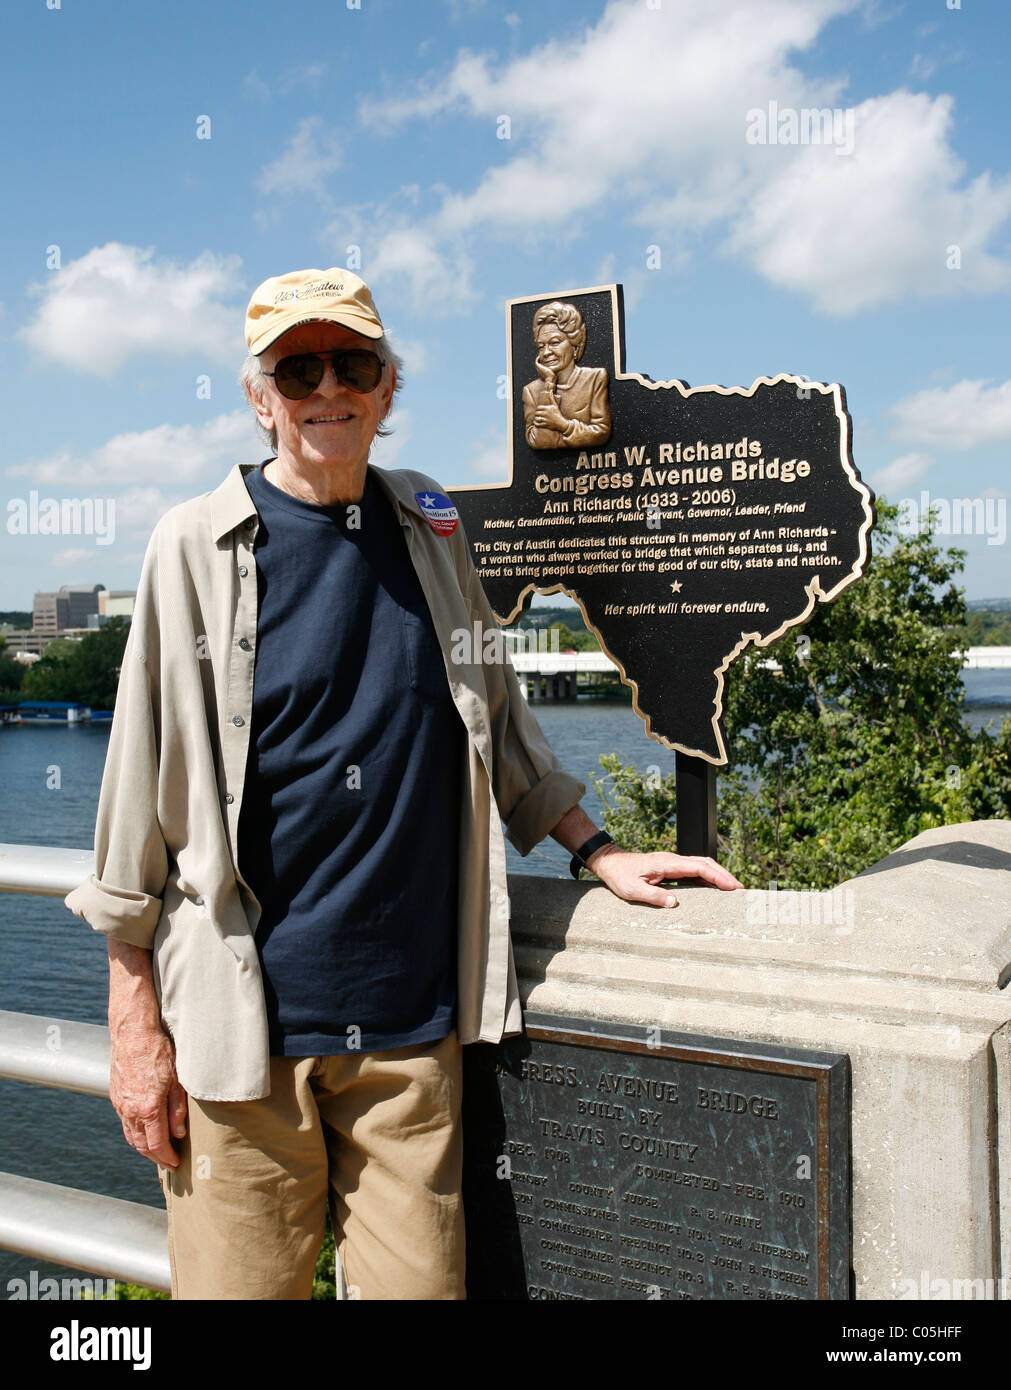 Austin Schriftsteller Edwin "Bud:" Schrake neben Gedenktafel für seine langjährigen Begleiter, ehemaliger Texas Gouverneur Ann Richards in Austin Stockfoto